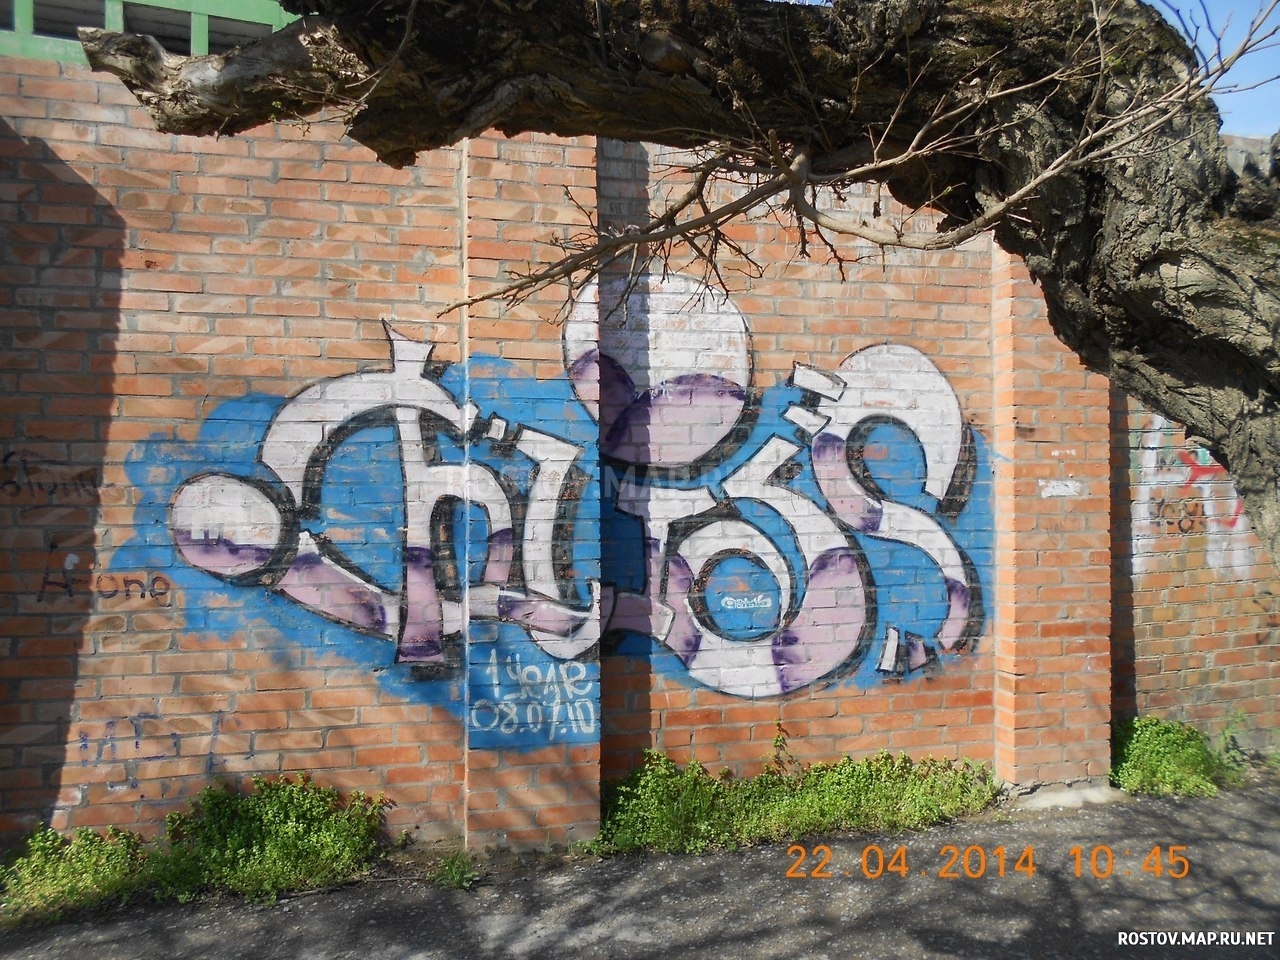 Граффити в Таганроге, 2014 год, Современные, Профессиональные, Осень, Весна, День, Граффити, Цветные